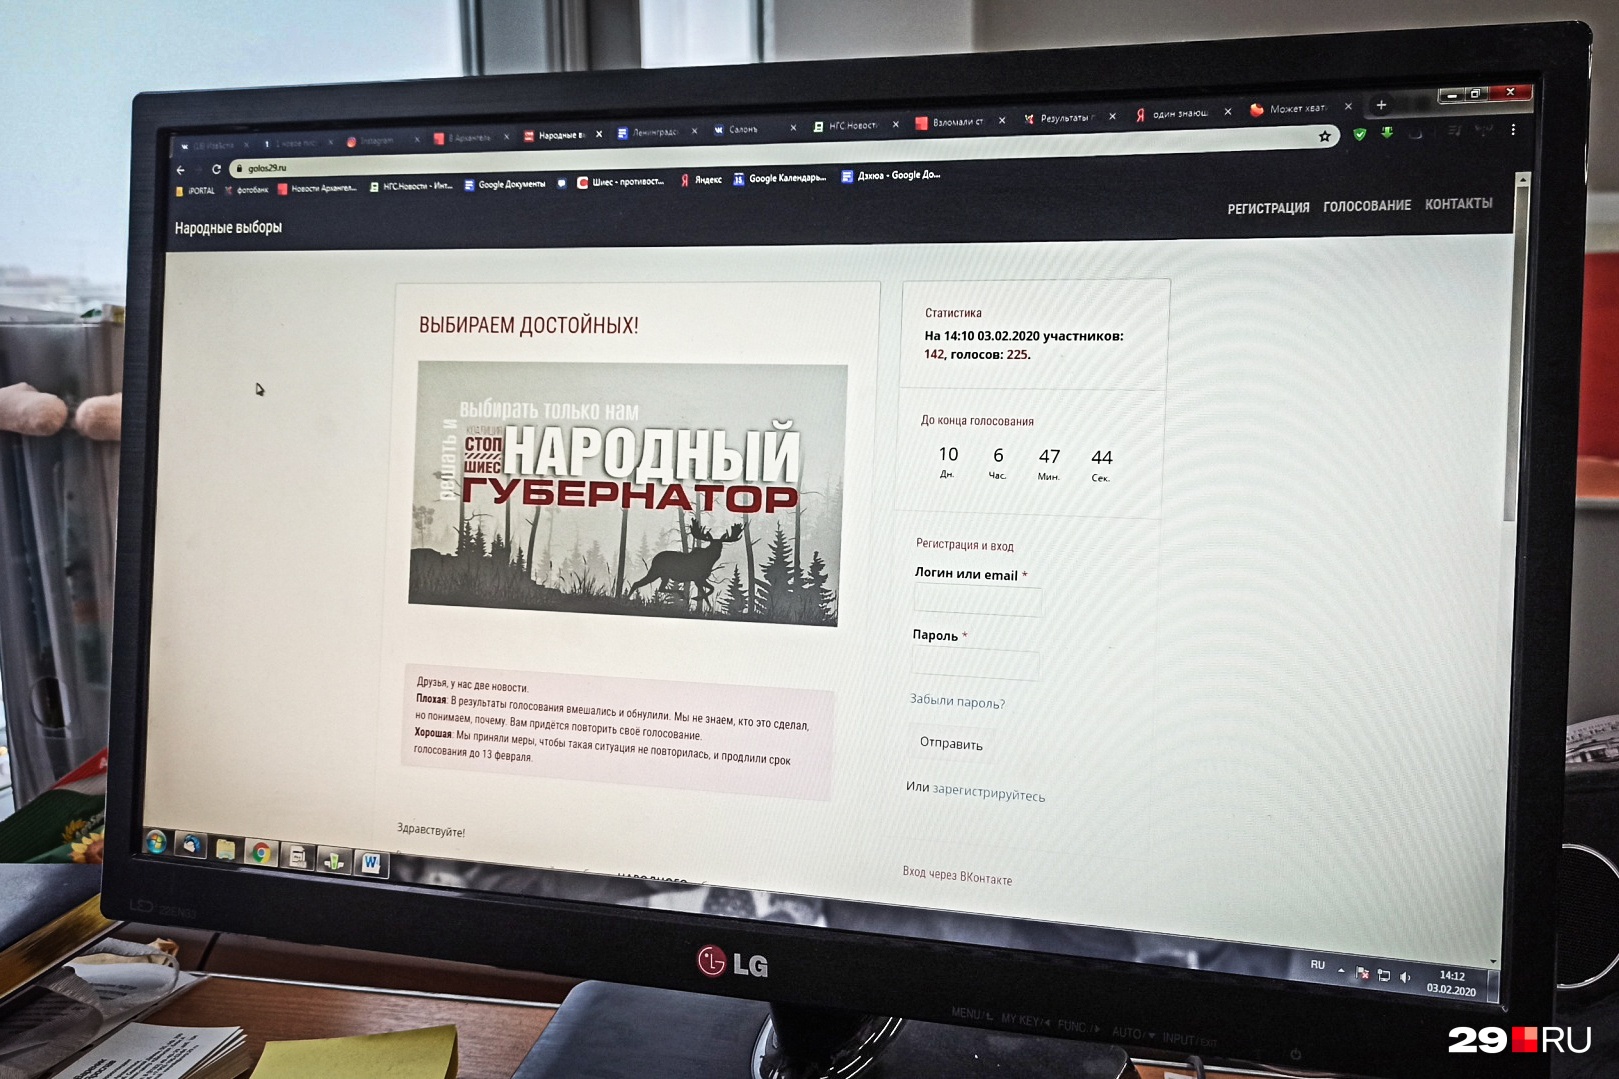 Неизвестные взломали сайт с голосованием за народного кандидата в губернаторы Архангельской области